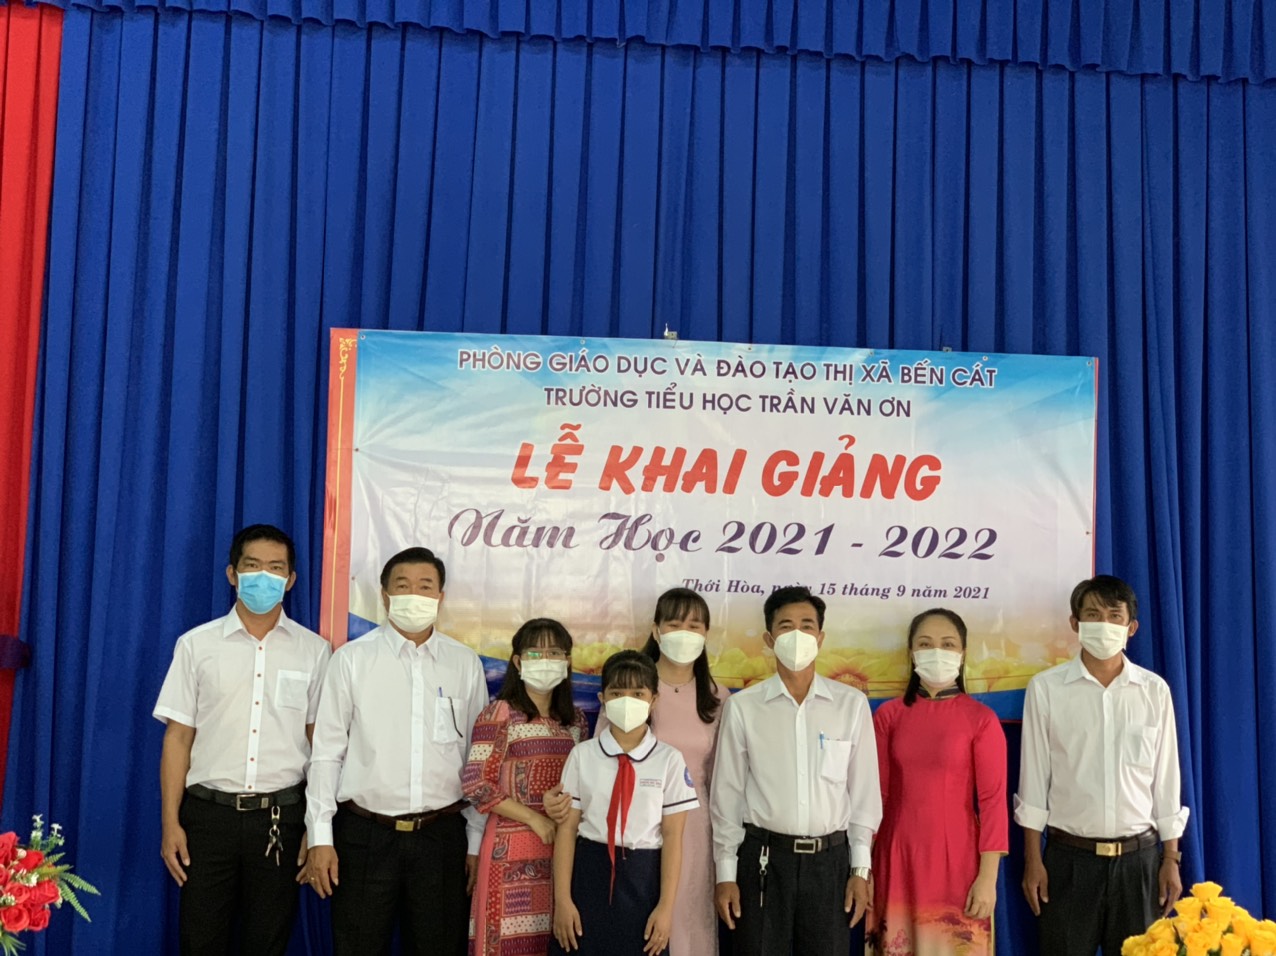 Trường Tiểu học Trần Văn Ơn tổ chức khai giảng trực tuyến ngày 15/9/2021